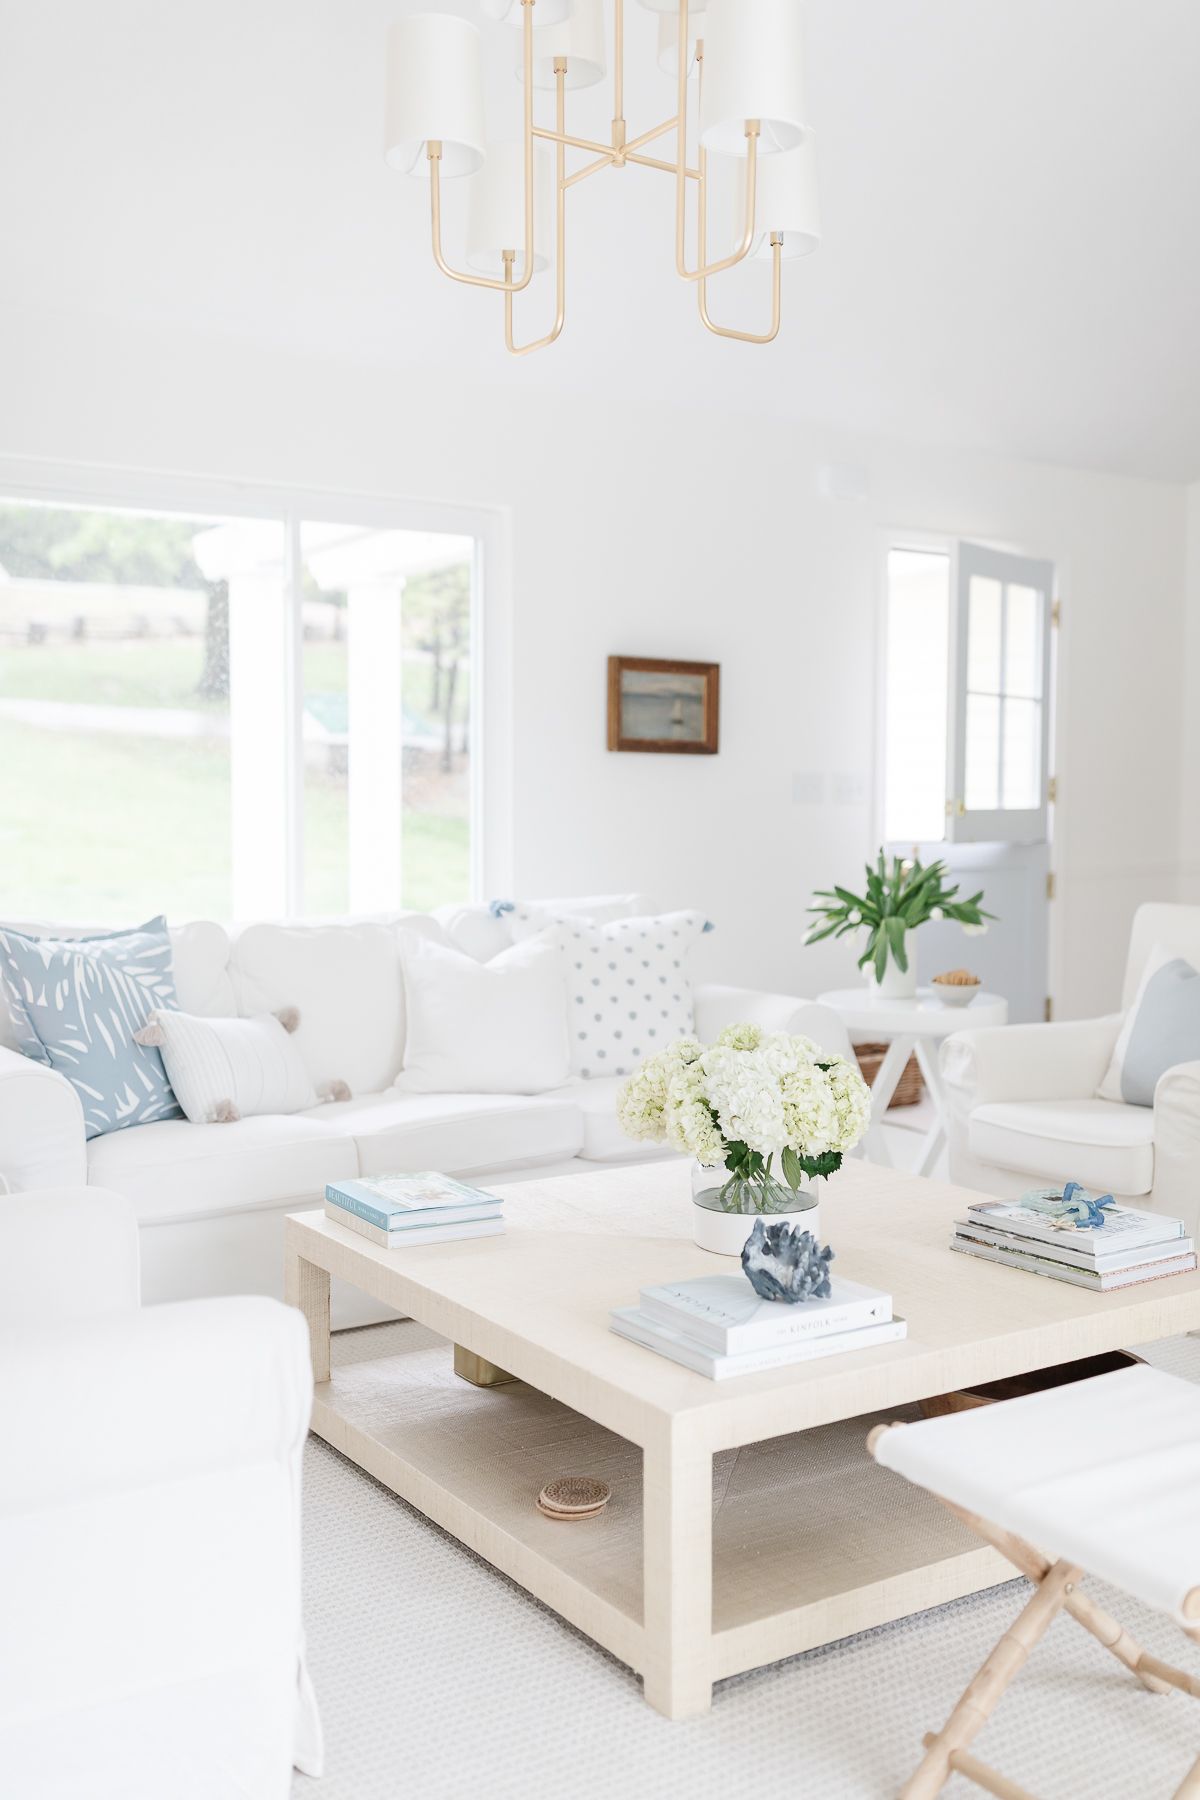 明亮的白色客厅里有白色的沙发和浅蓝色的枕头